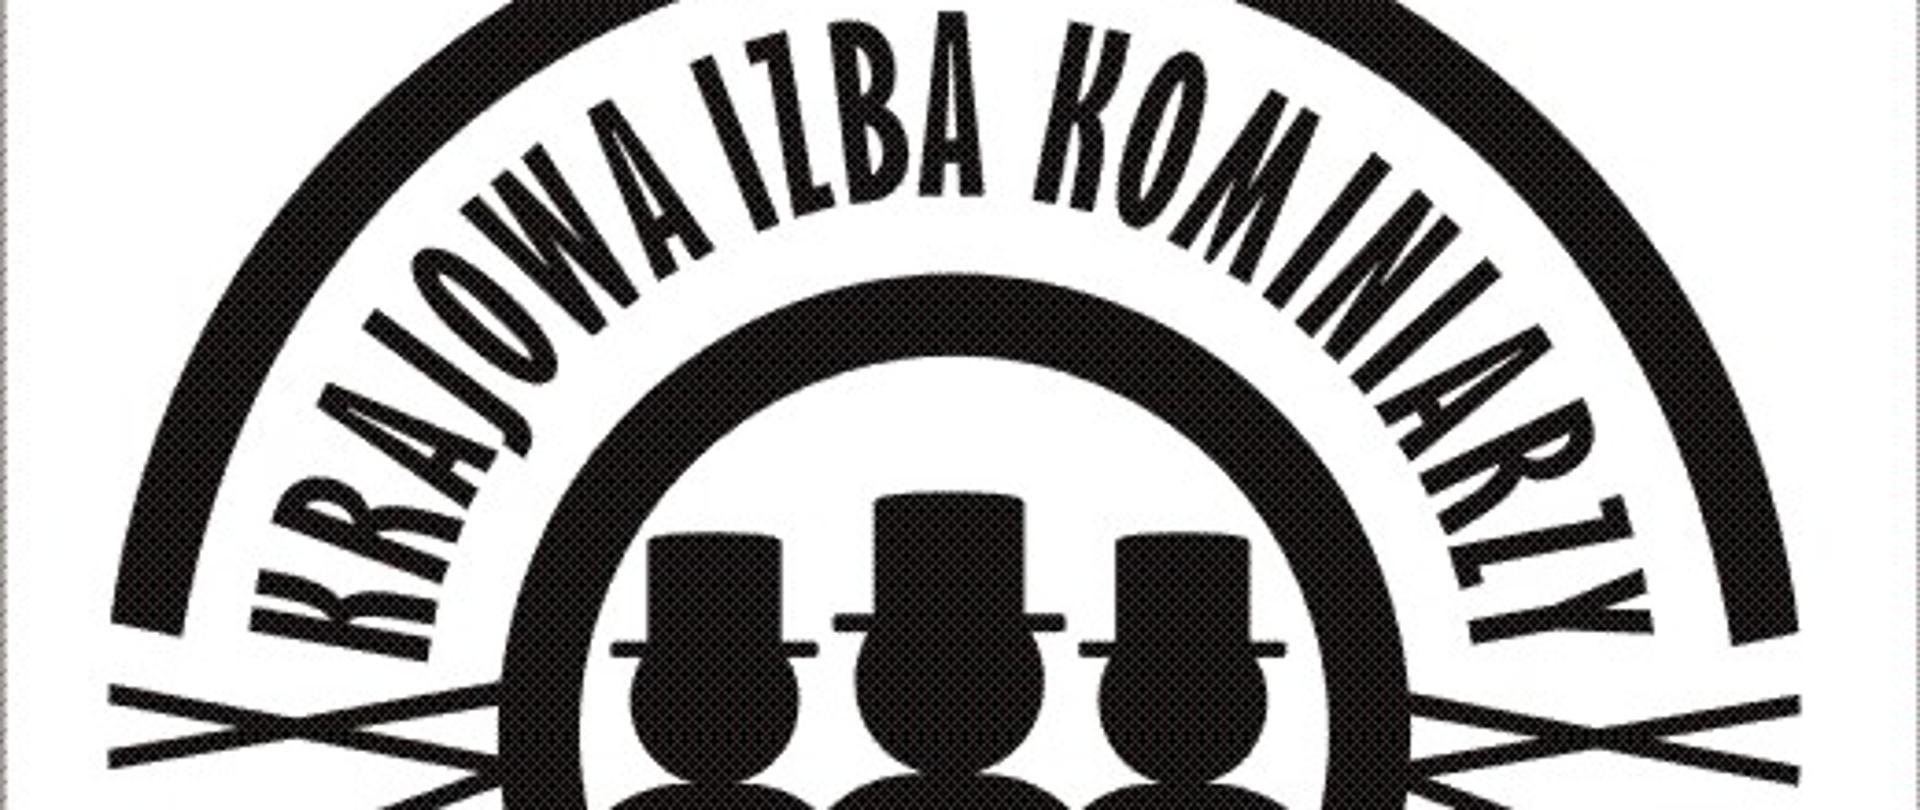 Logo Krajowej izby kominiarzy - trzech kominiarzy wpisanych w okrąg i napis krajowa izba kominiarzy